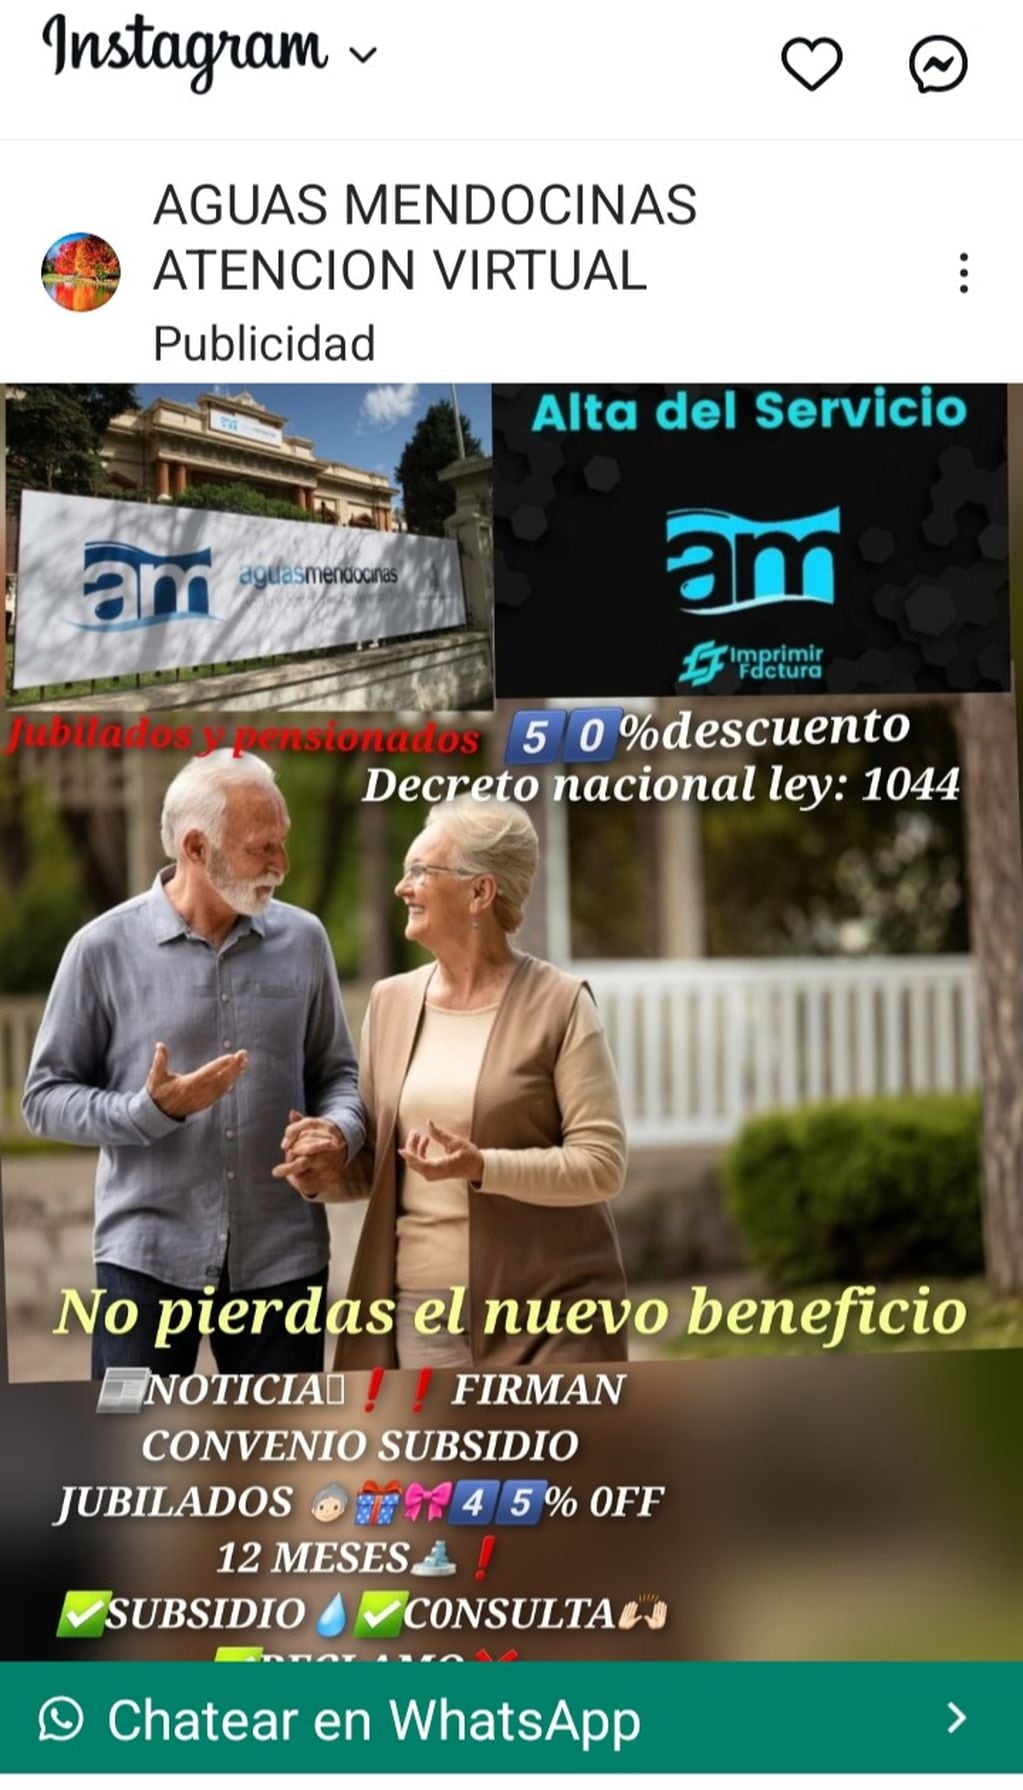 Cuenta trucha de Aguas Mendocinas publicita beneficio para jubilados en Instagram.